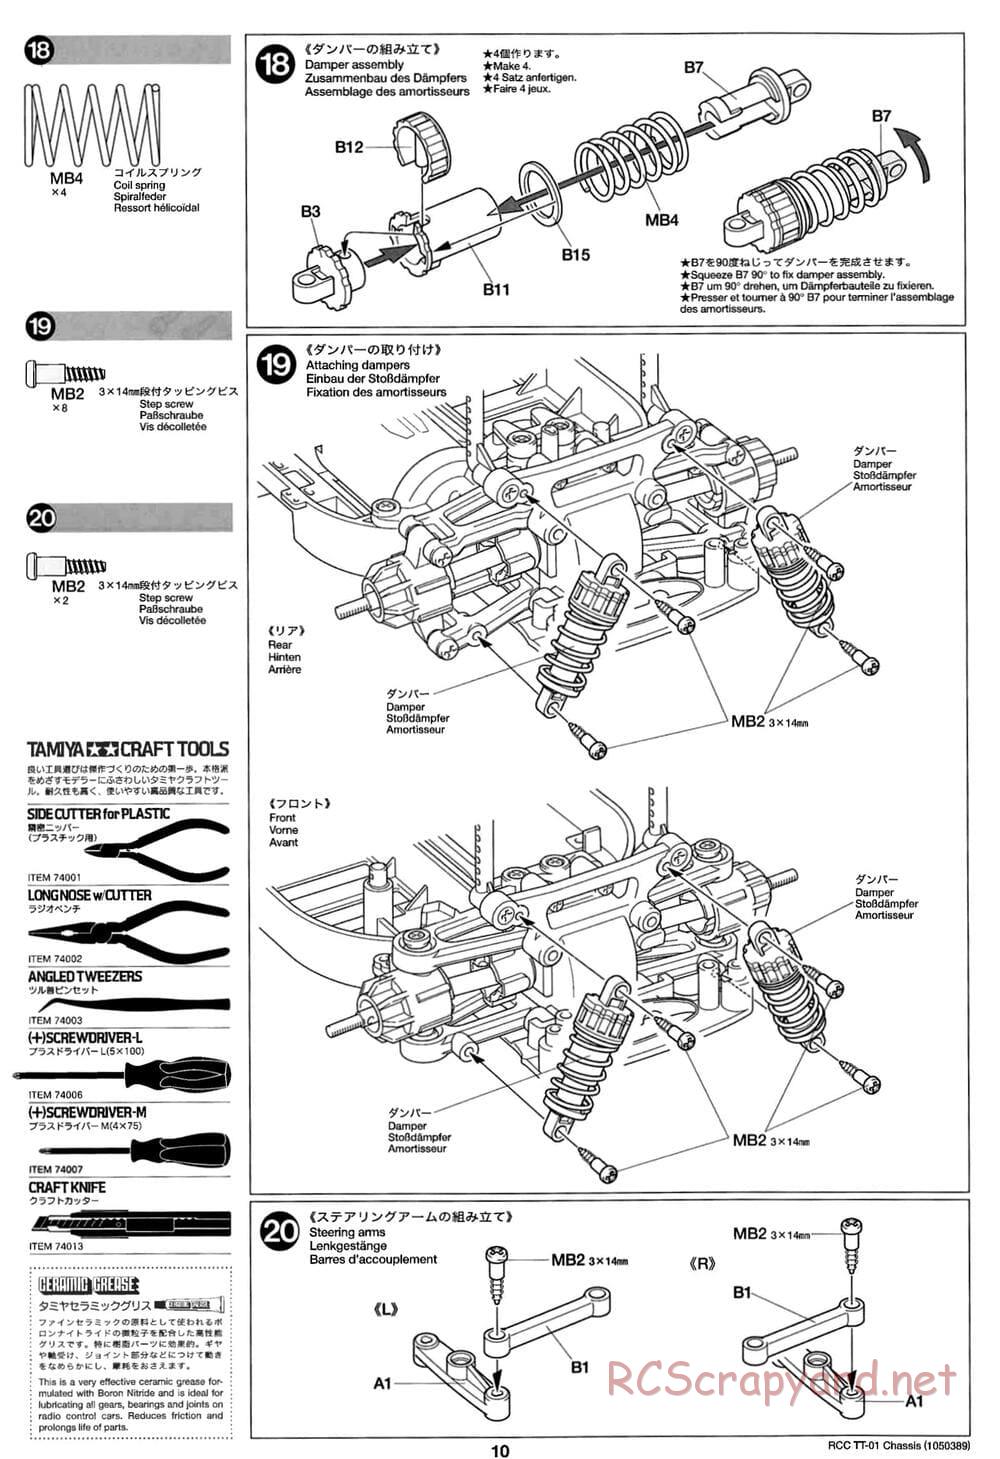 Tamiya - TT-01 Chassis - Manual - Page 10